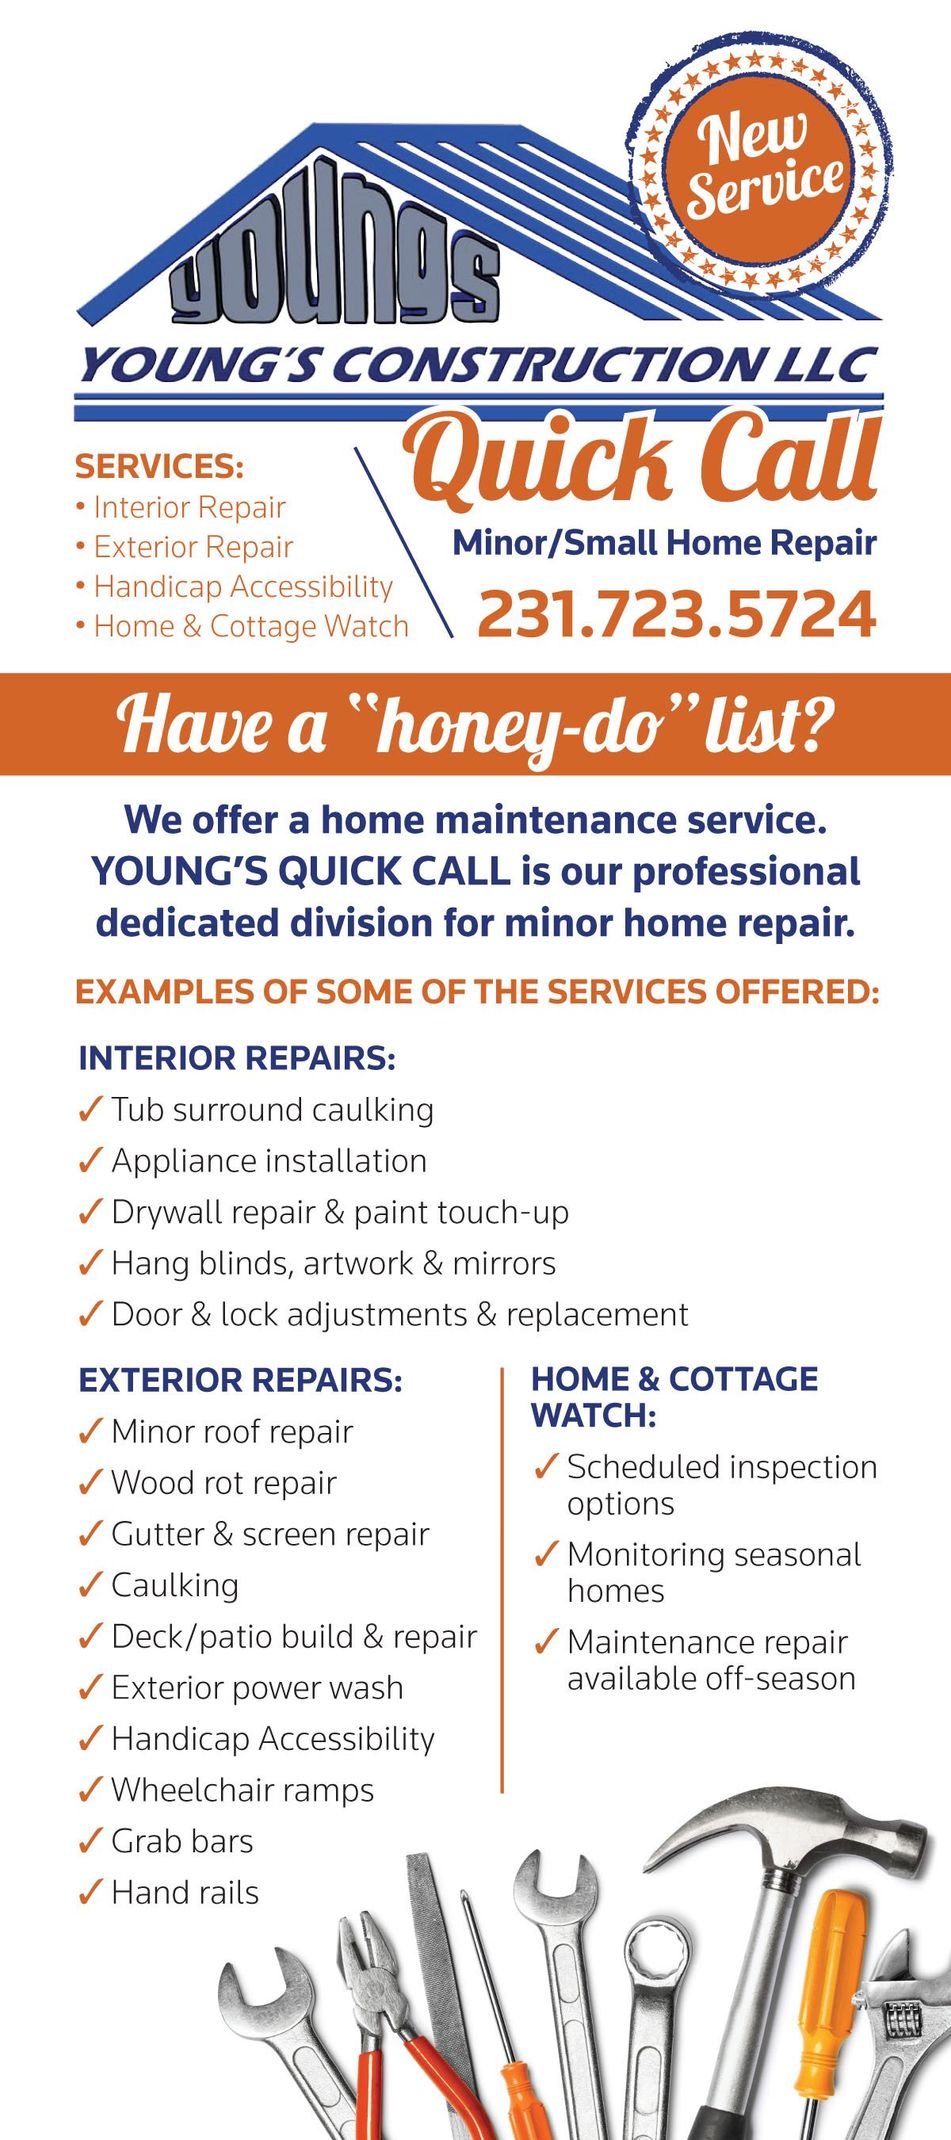 minor home repair, small home repair, interior repair, exterior repair, home watch, cottage watch